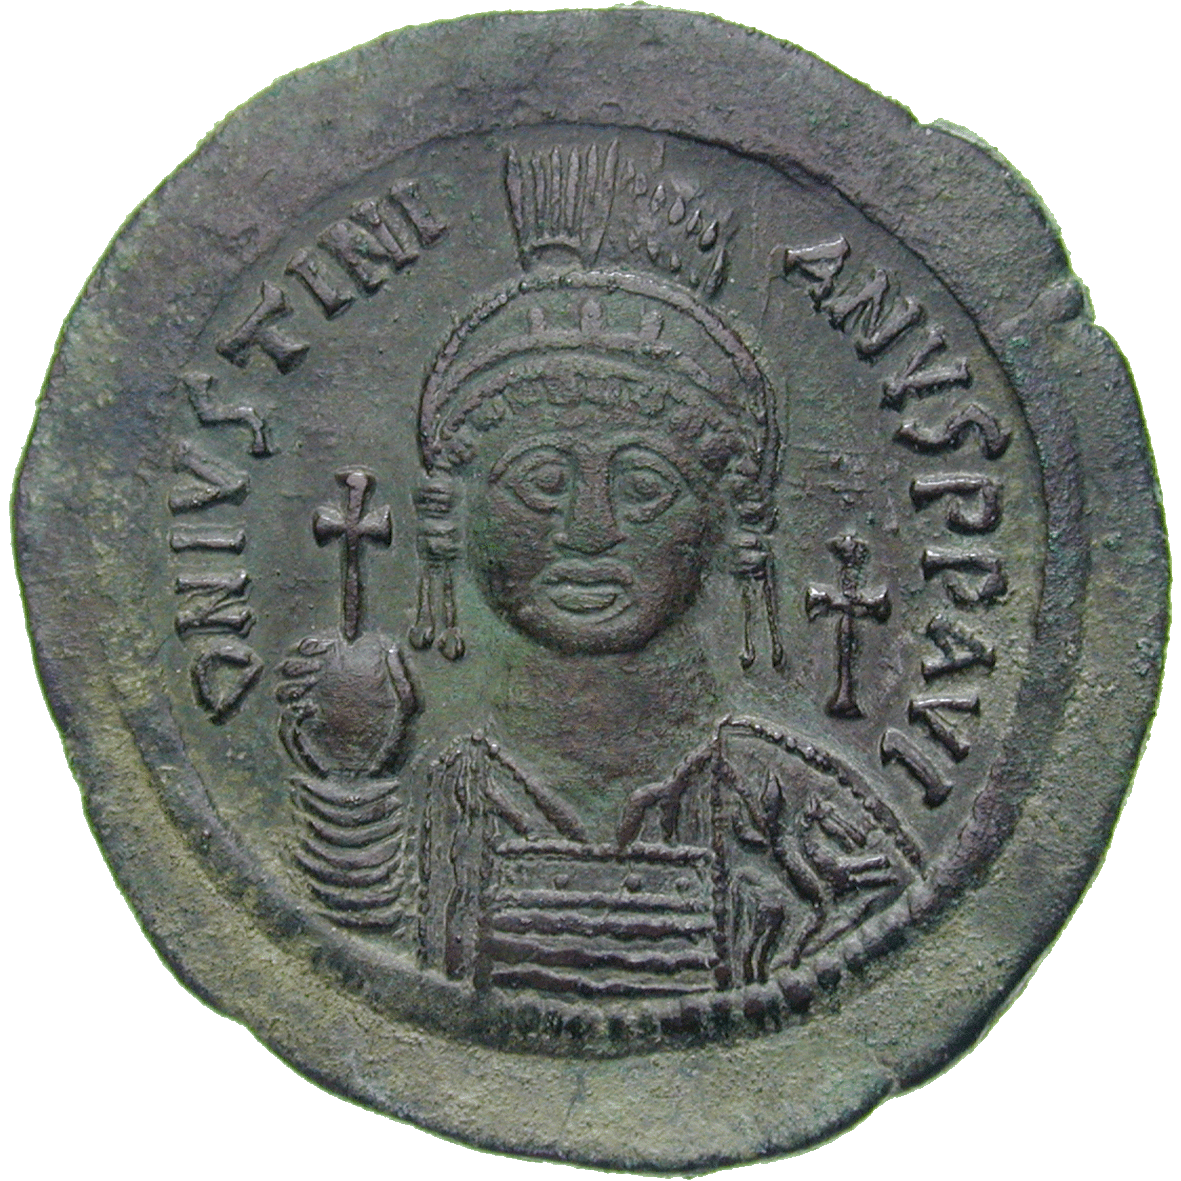 Byzantinisches Kaiserreich, Justinian I., Follis  (obverse)